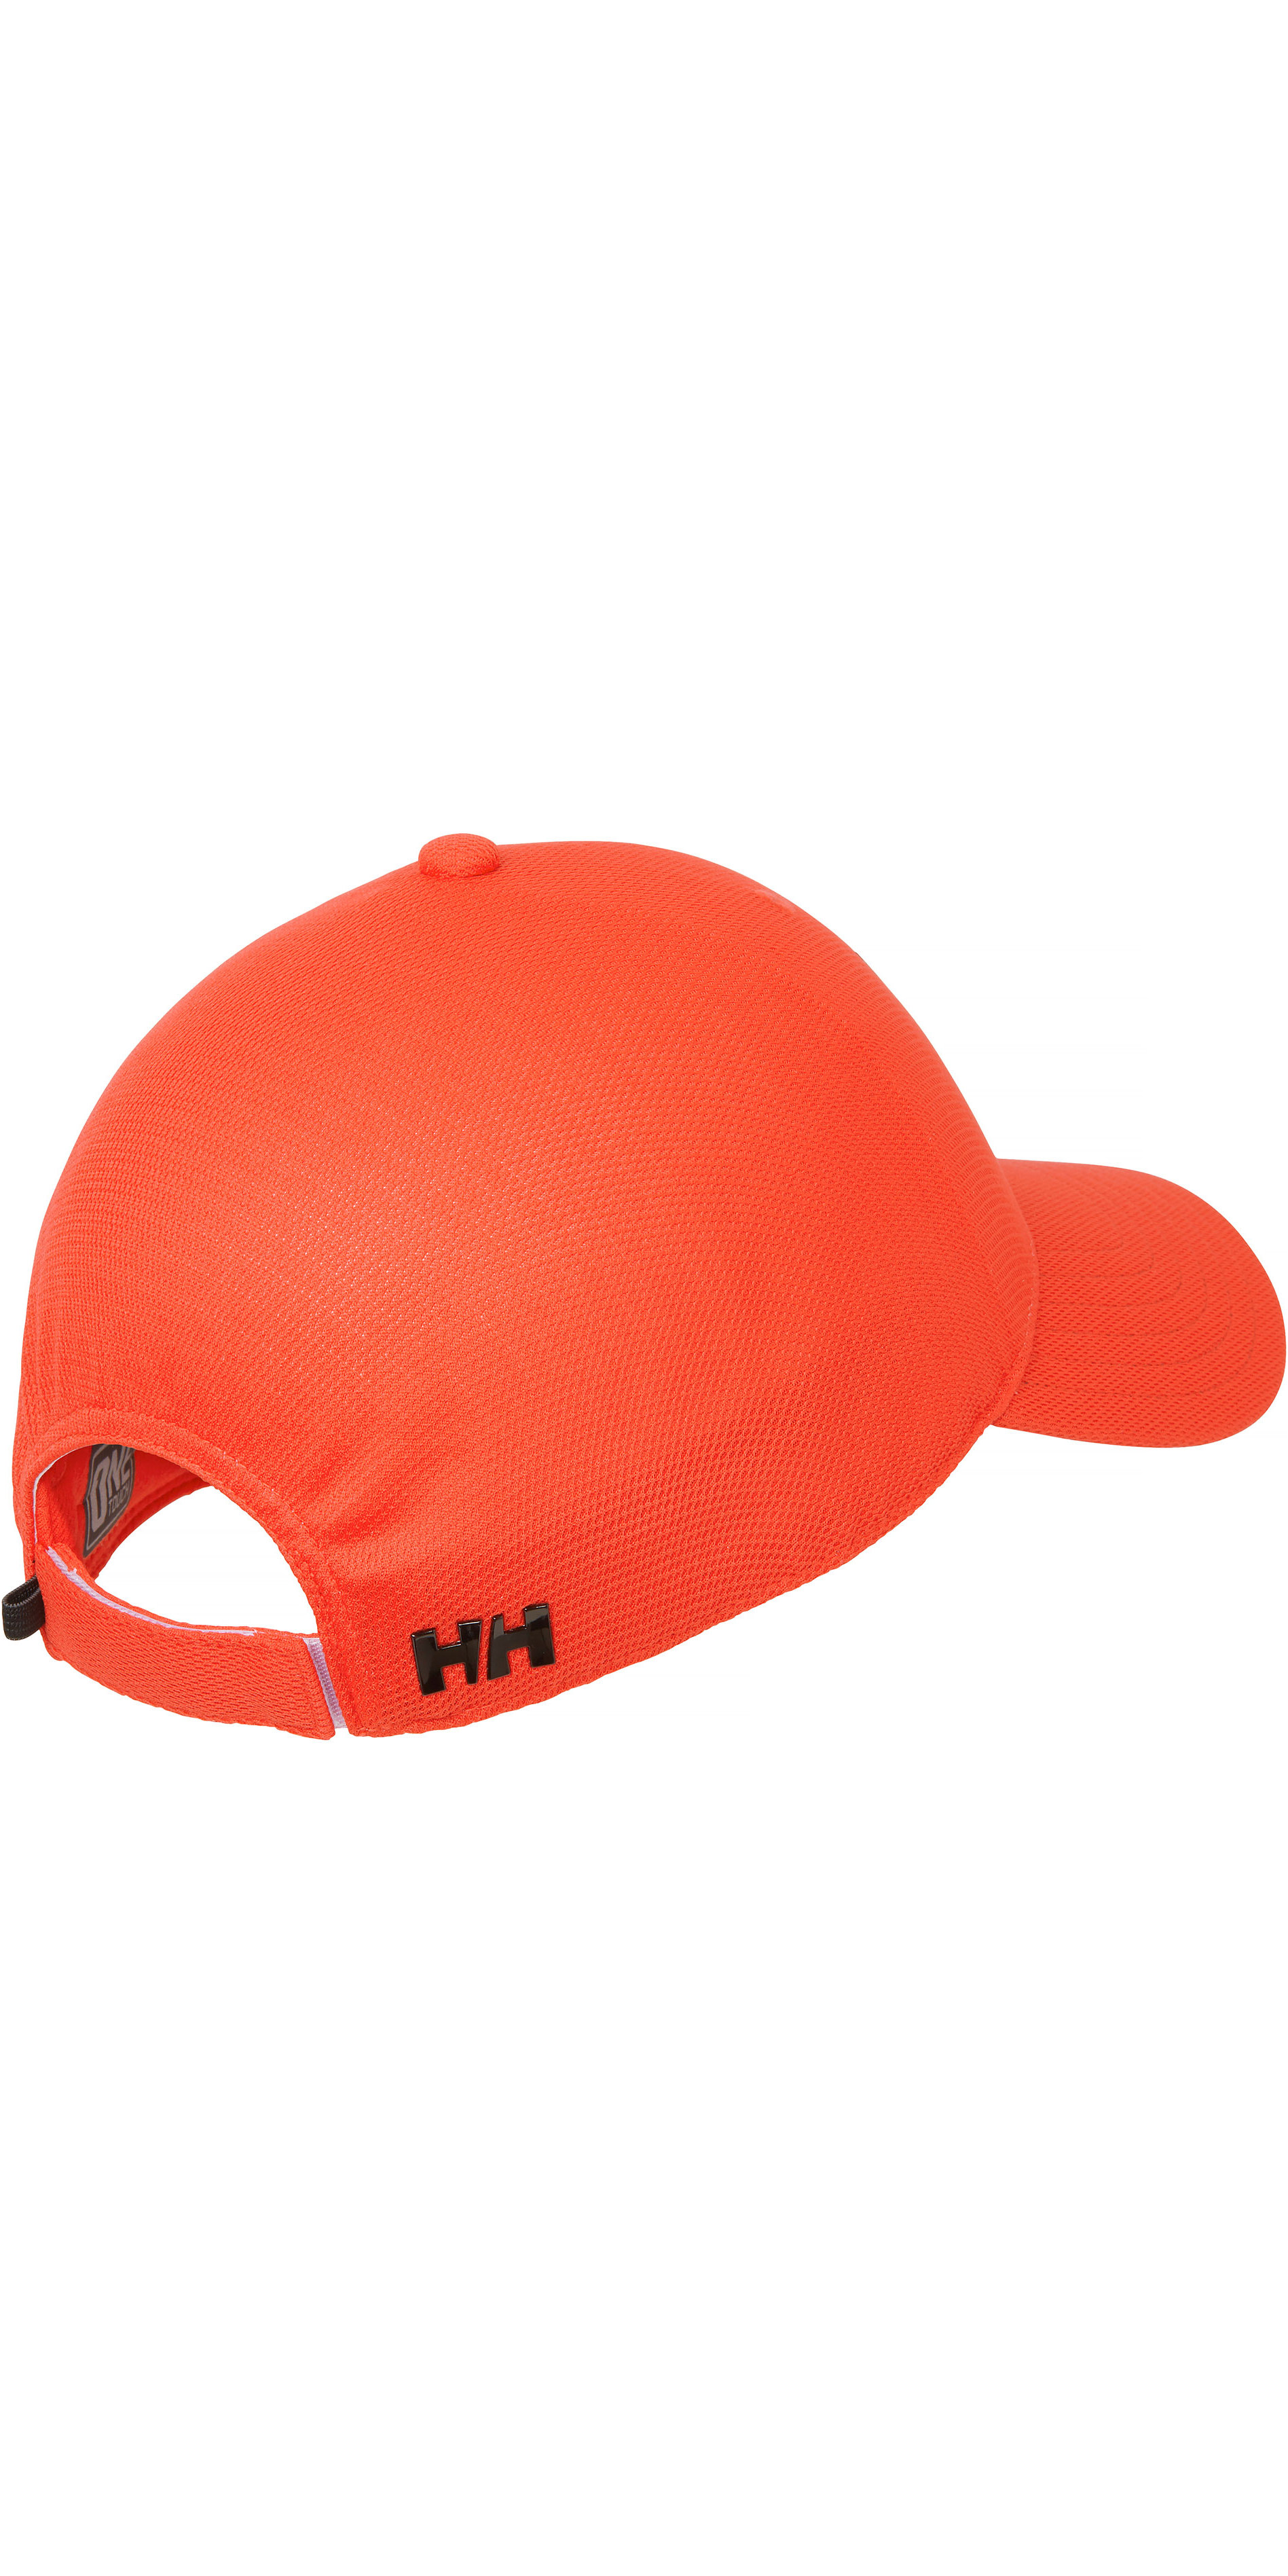 2021 Helly Hansen HP Foil Blaze Orange 67397 - - Accessories - Gloves Watersports Outlet